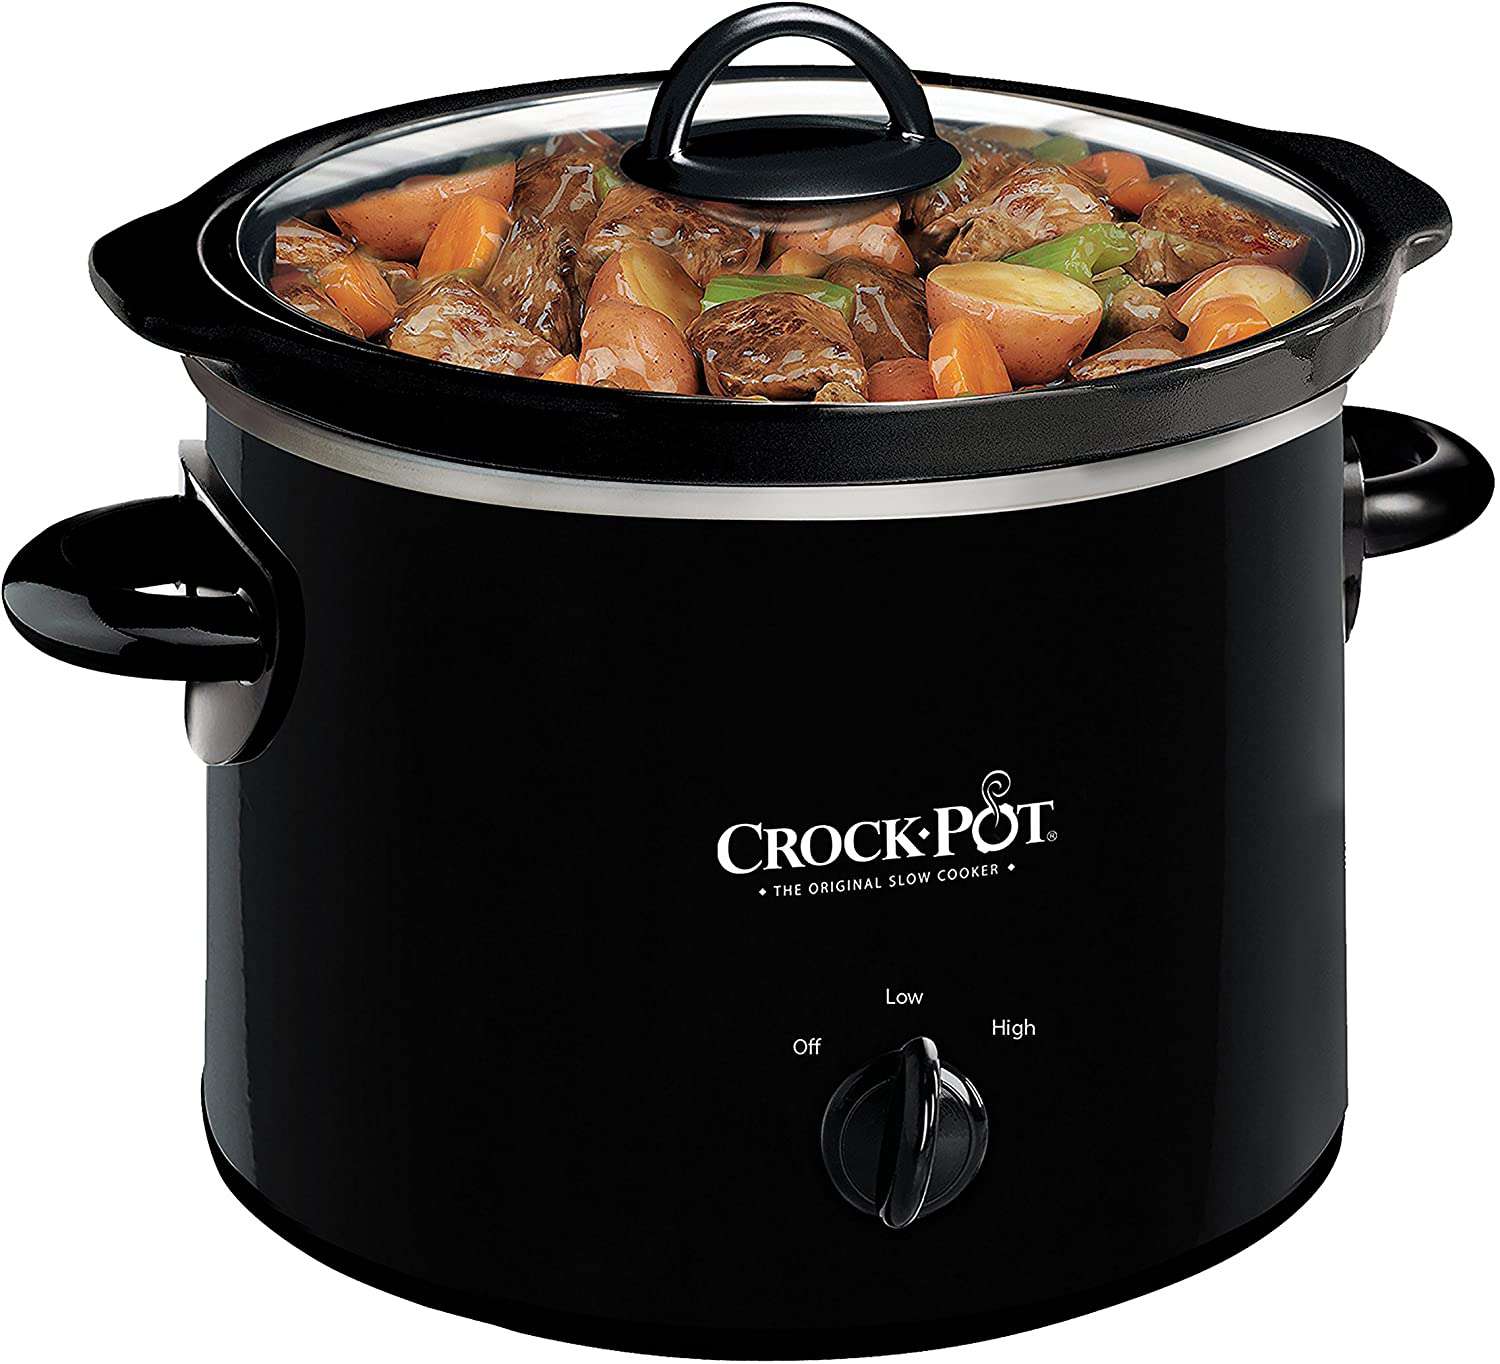 2-Quart Crock-Pot